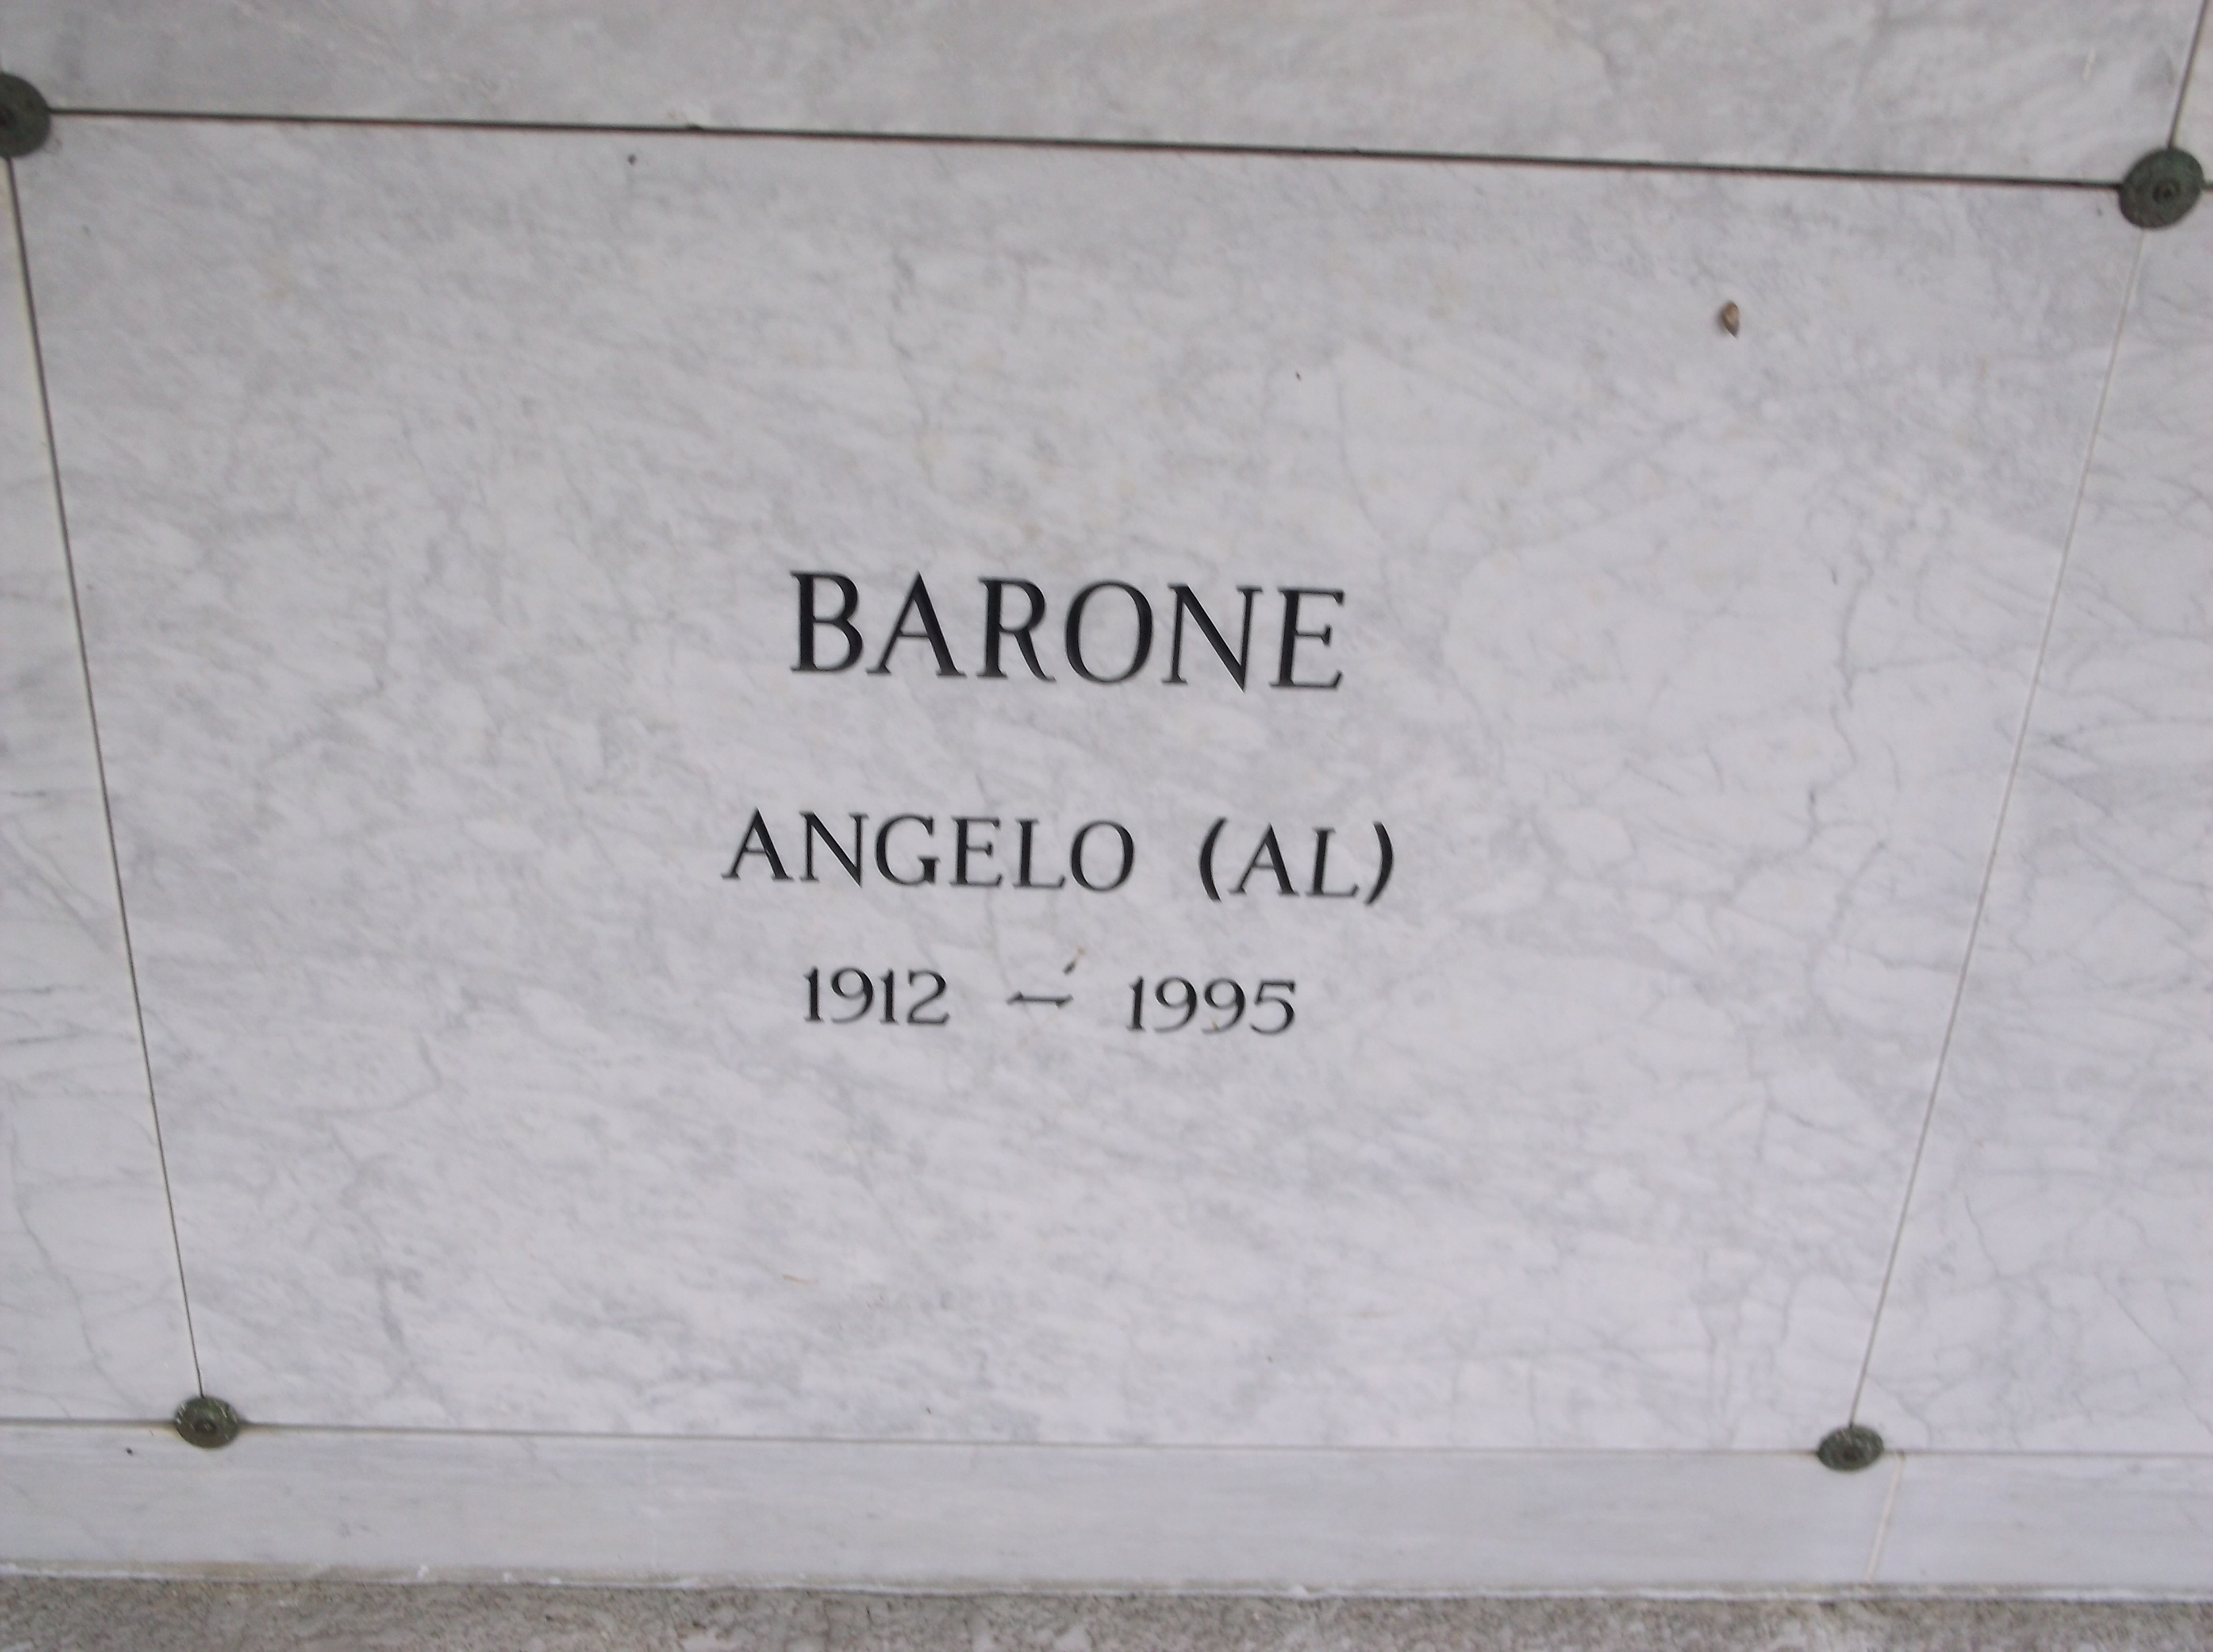 Angelo "Al" Barone